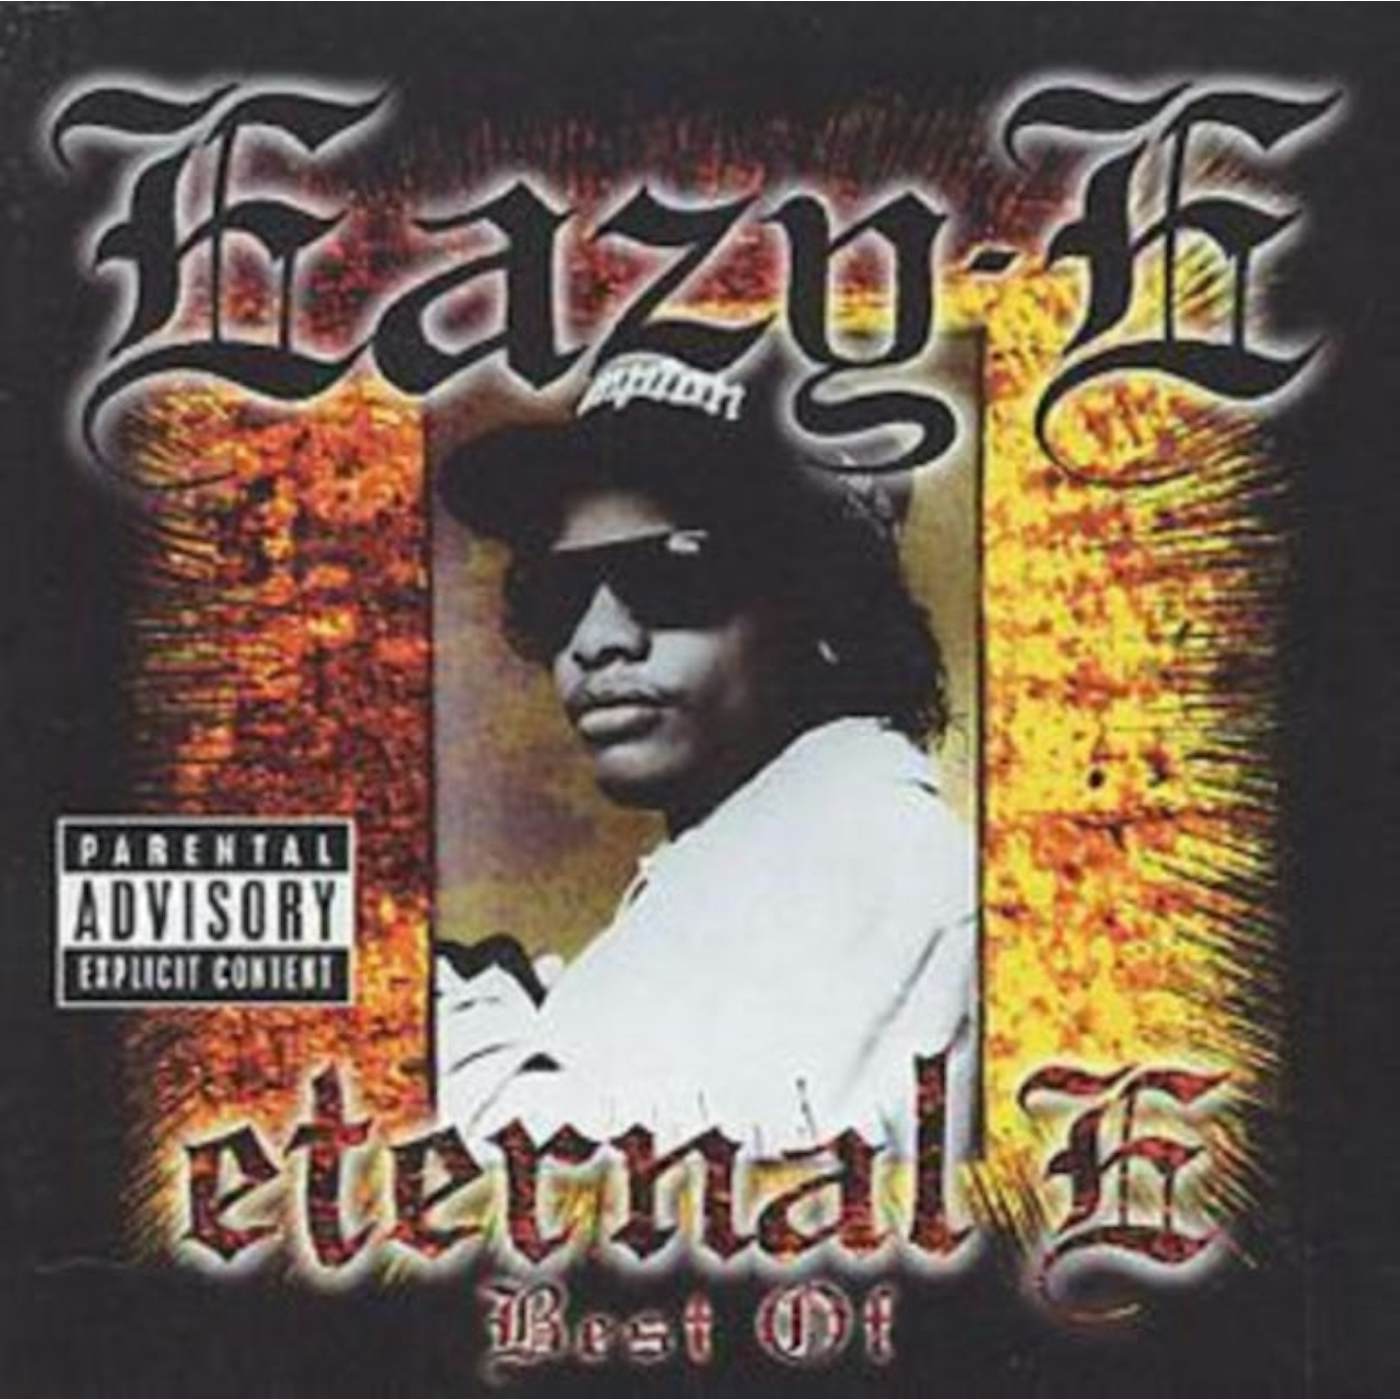 Eazy-E CD - Eternal E - Best Of